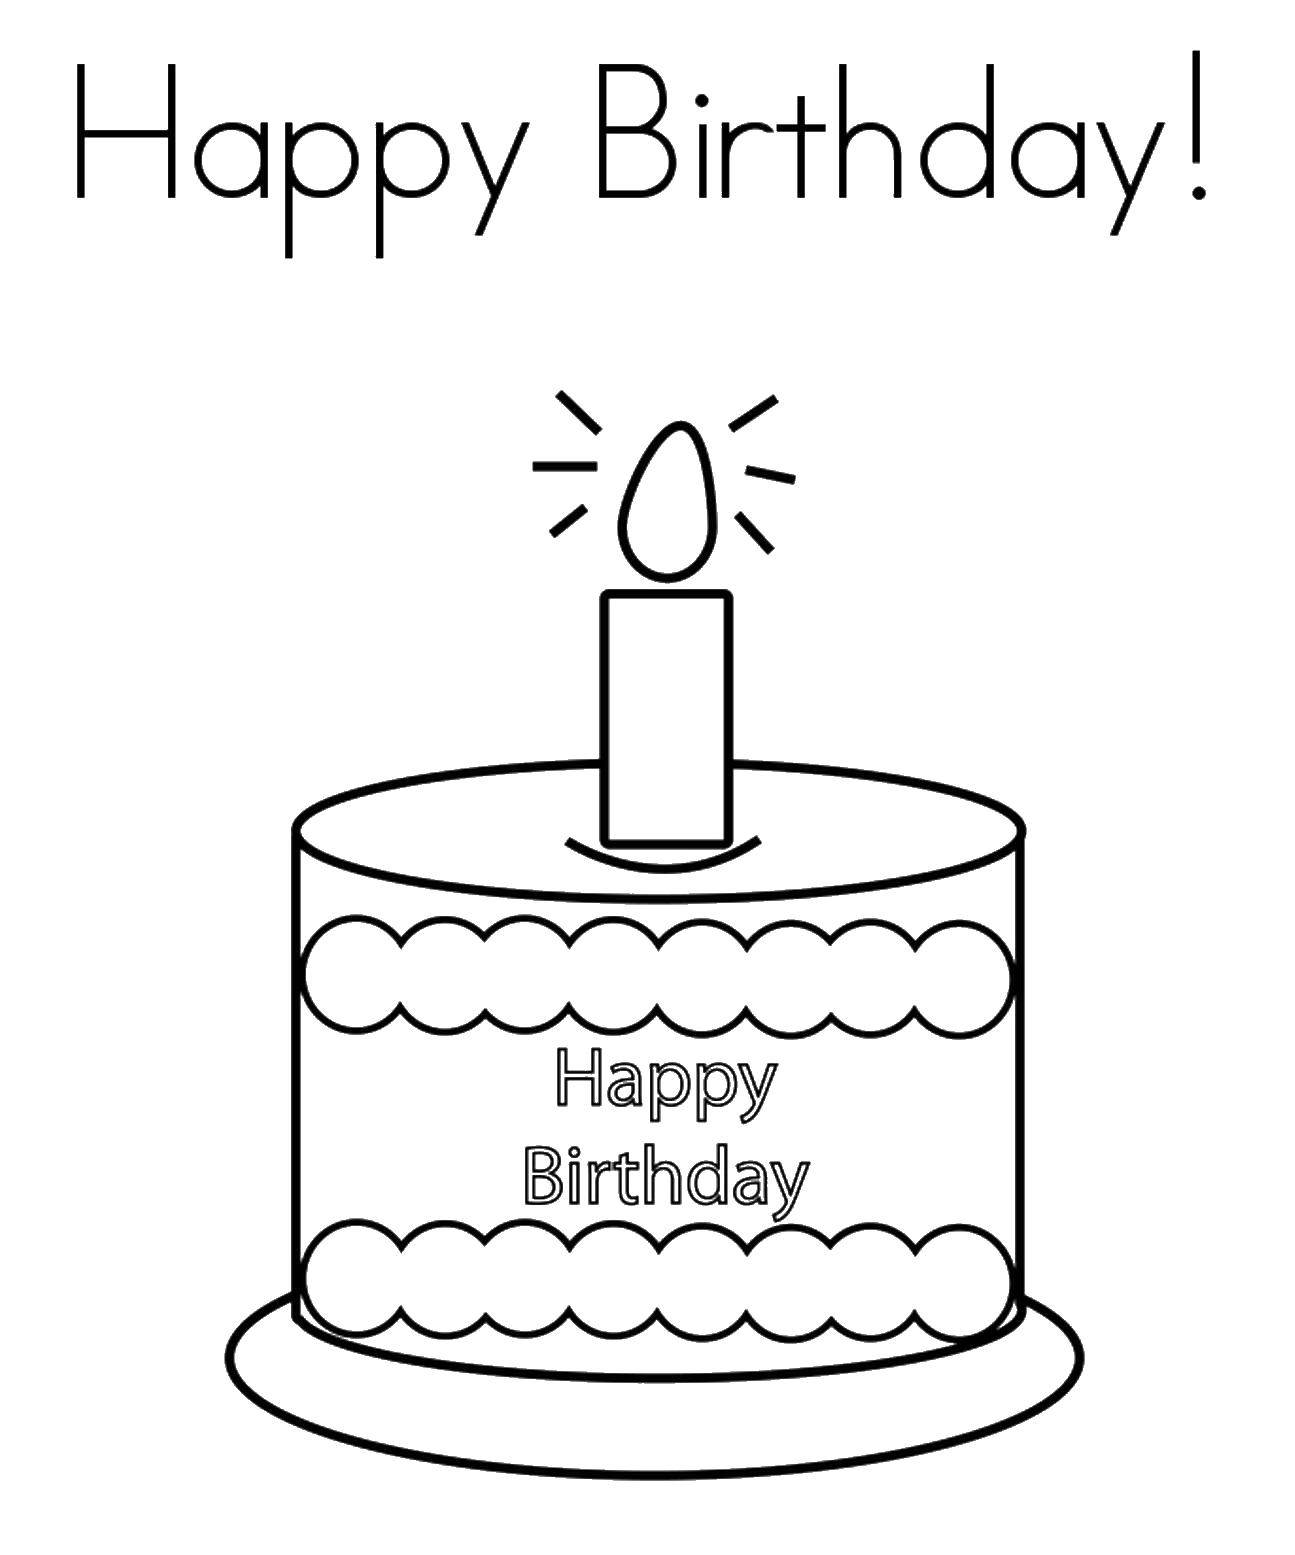 Розмальовки  З днем народження, свічка в торті. Завантажити розмальовку Торт, їжа, свято.  Роздрукувати ,торти,